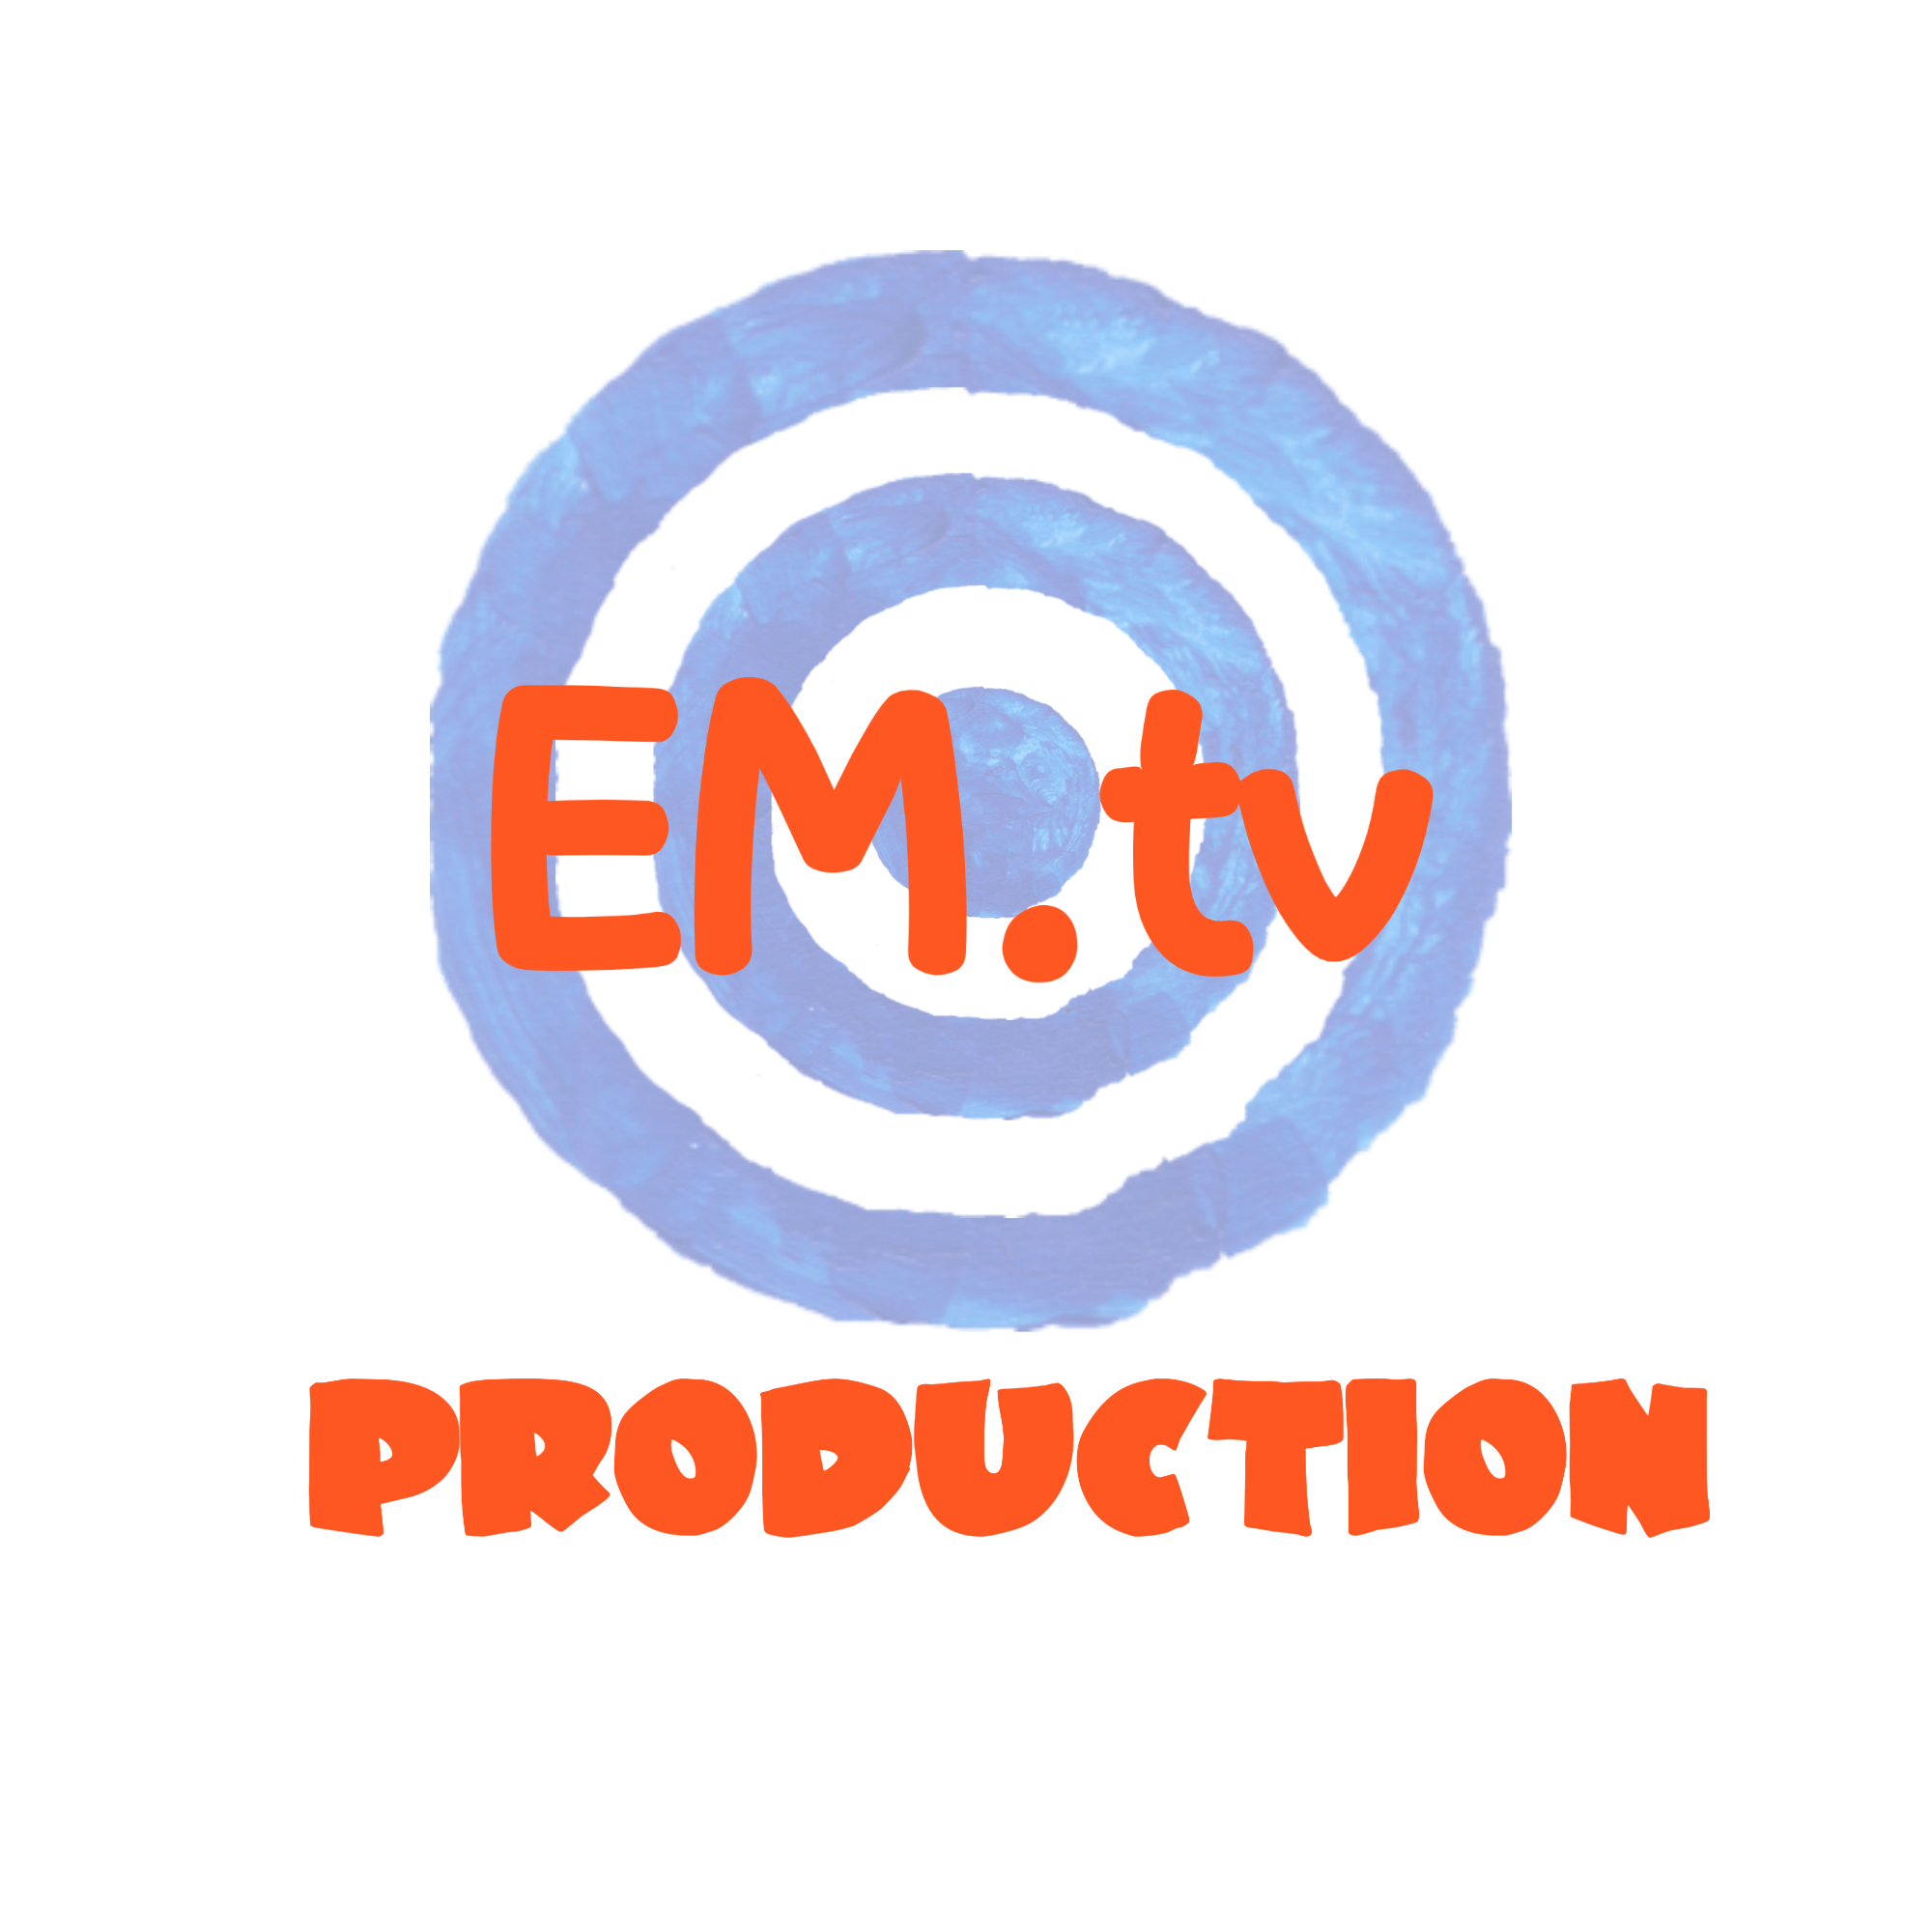 Emtv Programme